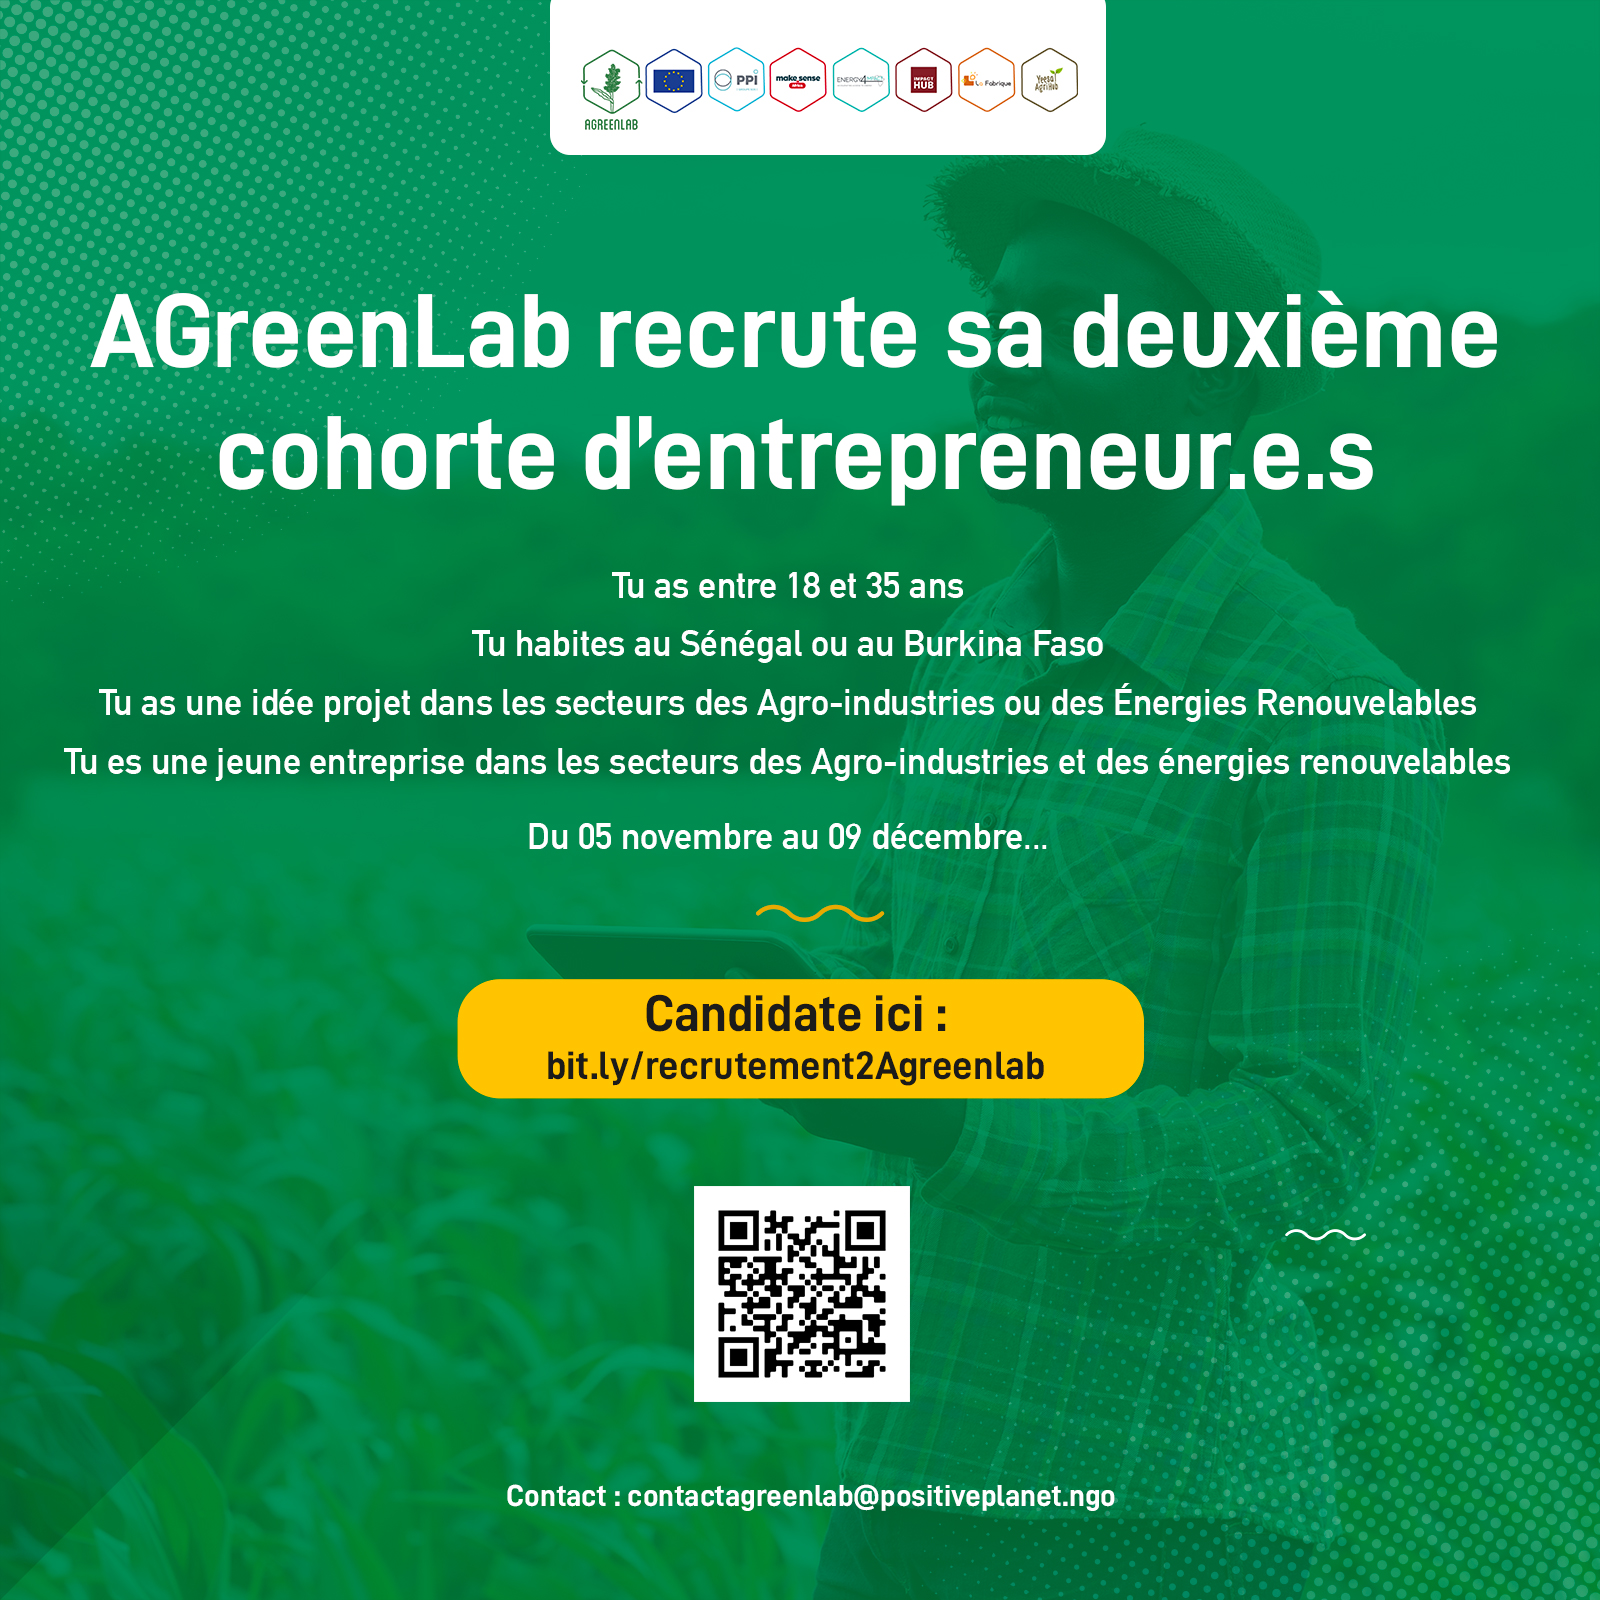 AGreenLab accompagne les entrepreneurs dans les Agro-industries ou les Energies Renouvelables